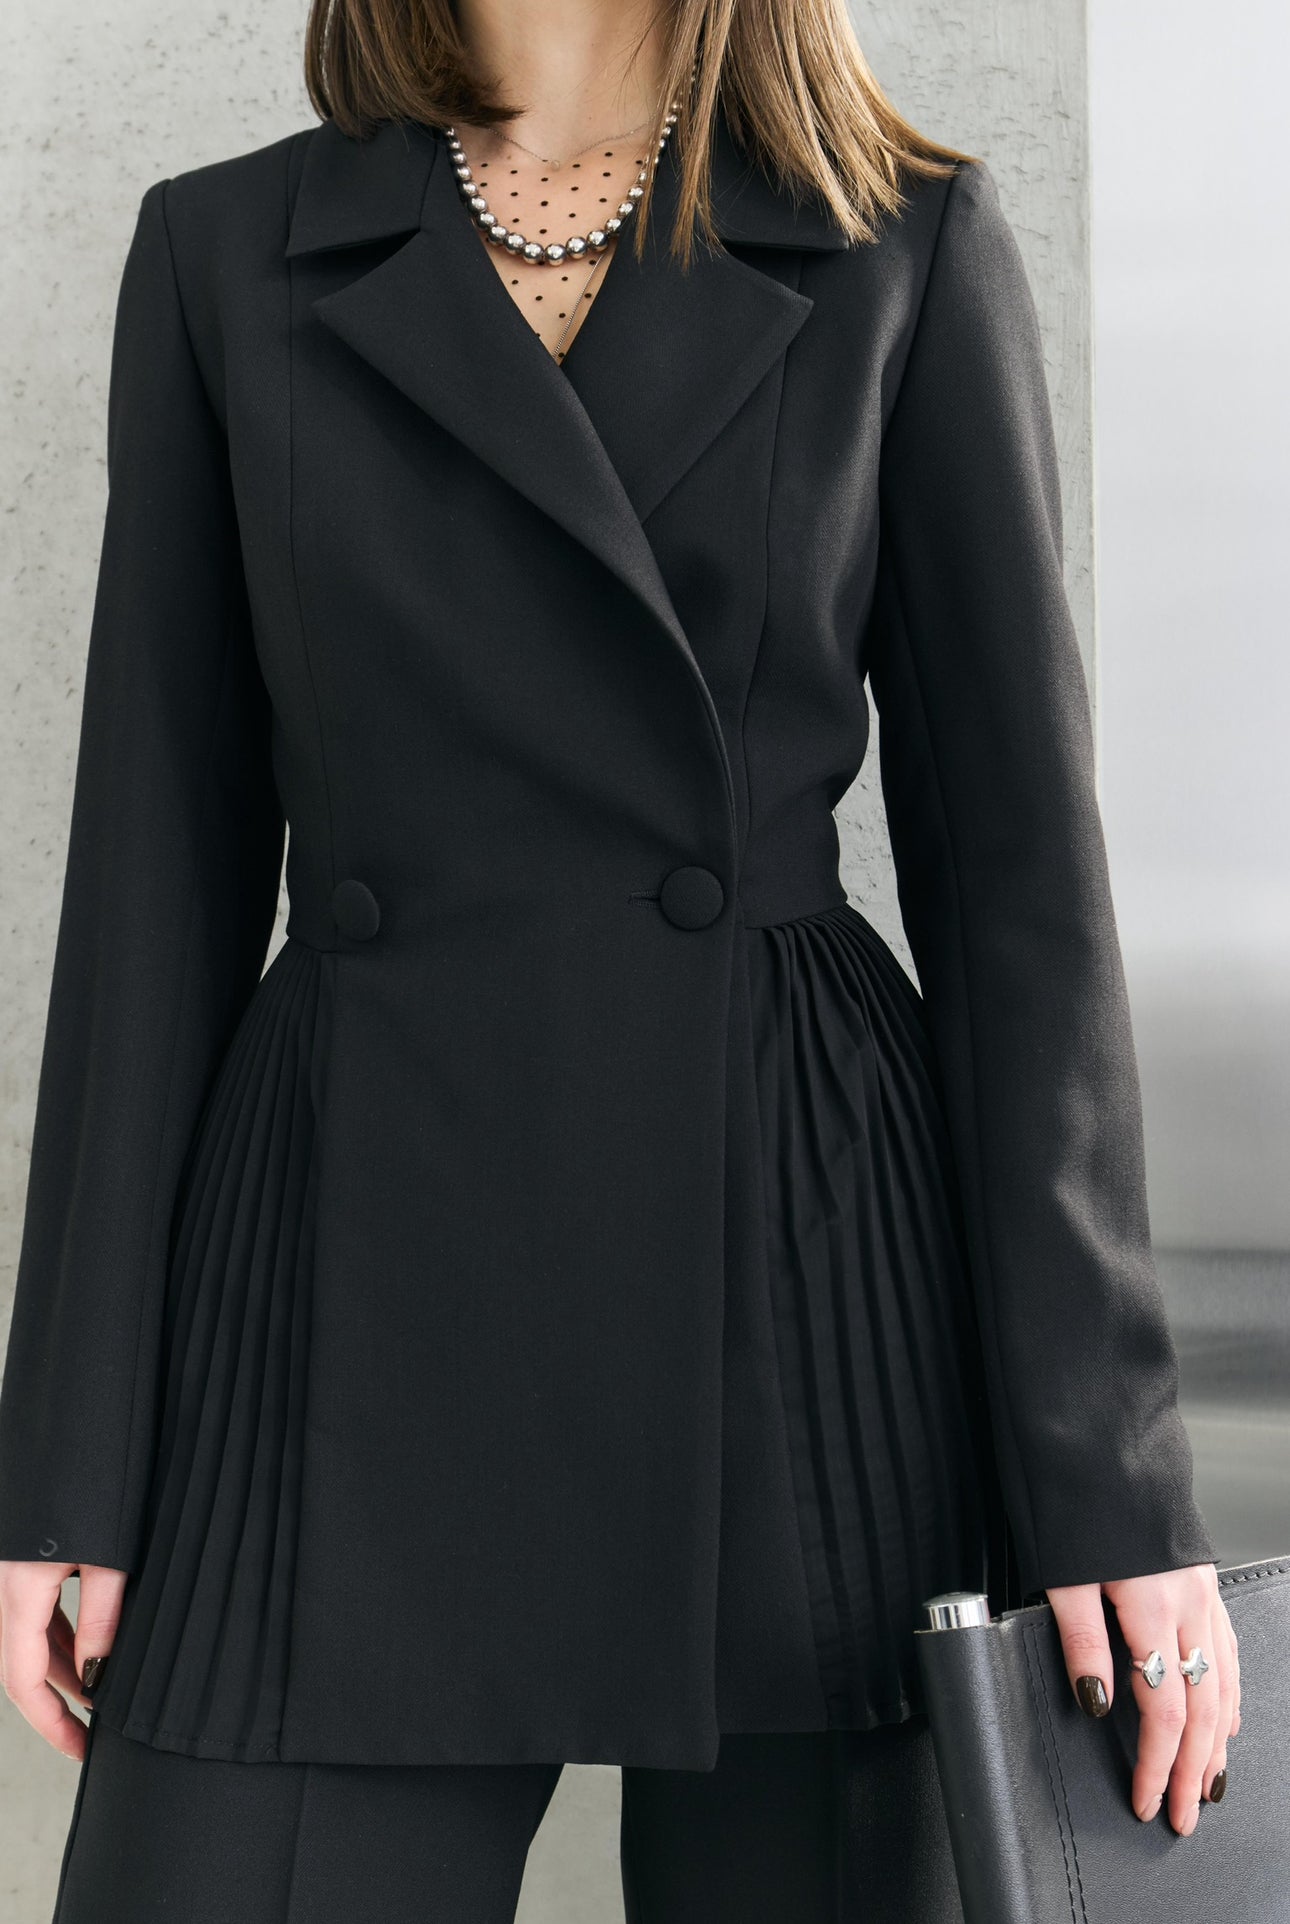 Dominika's black pleated jacket